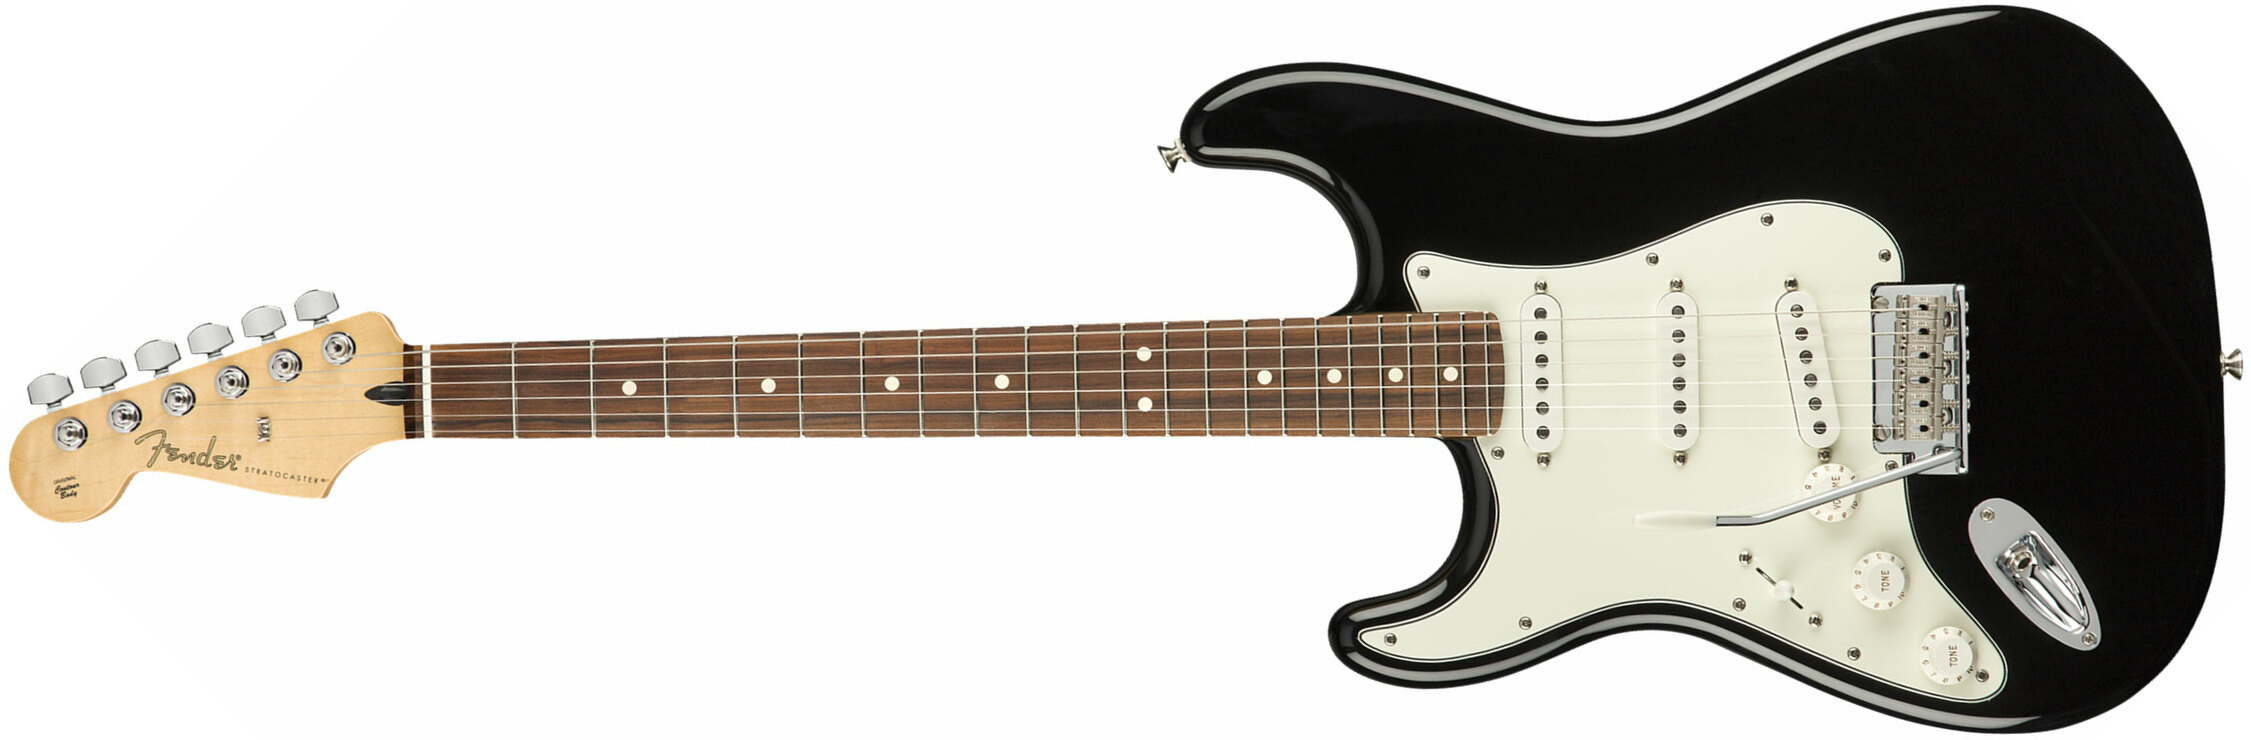 Fender Strat Player Lh Gaucher Mex Sss Pf - Black - Linkshandige elektrische gitaar - Main picture